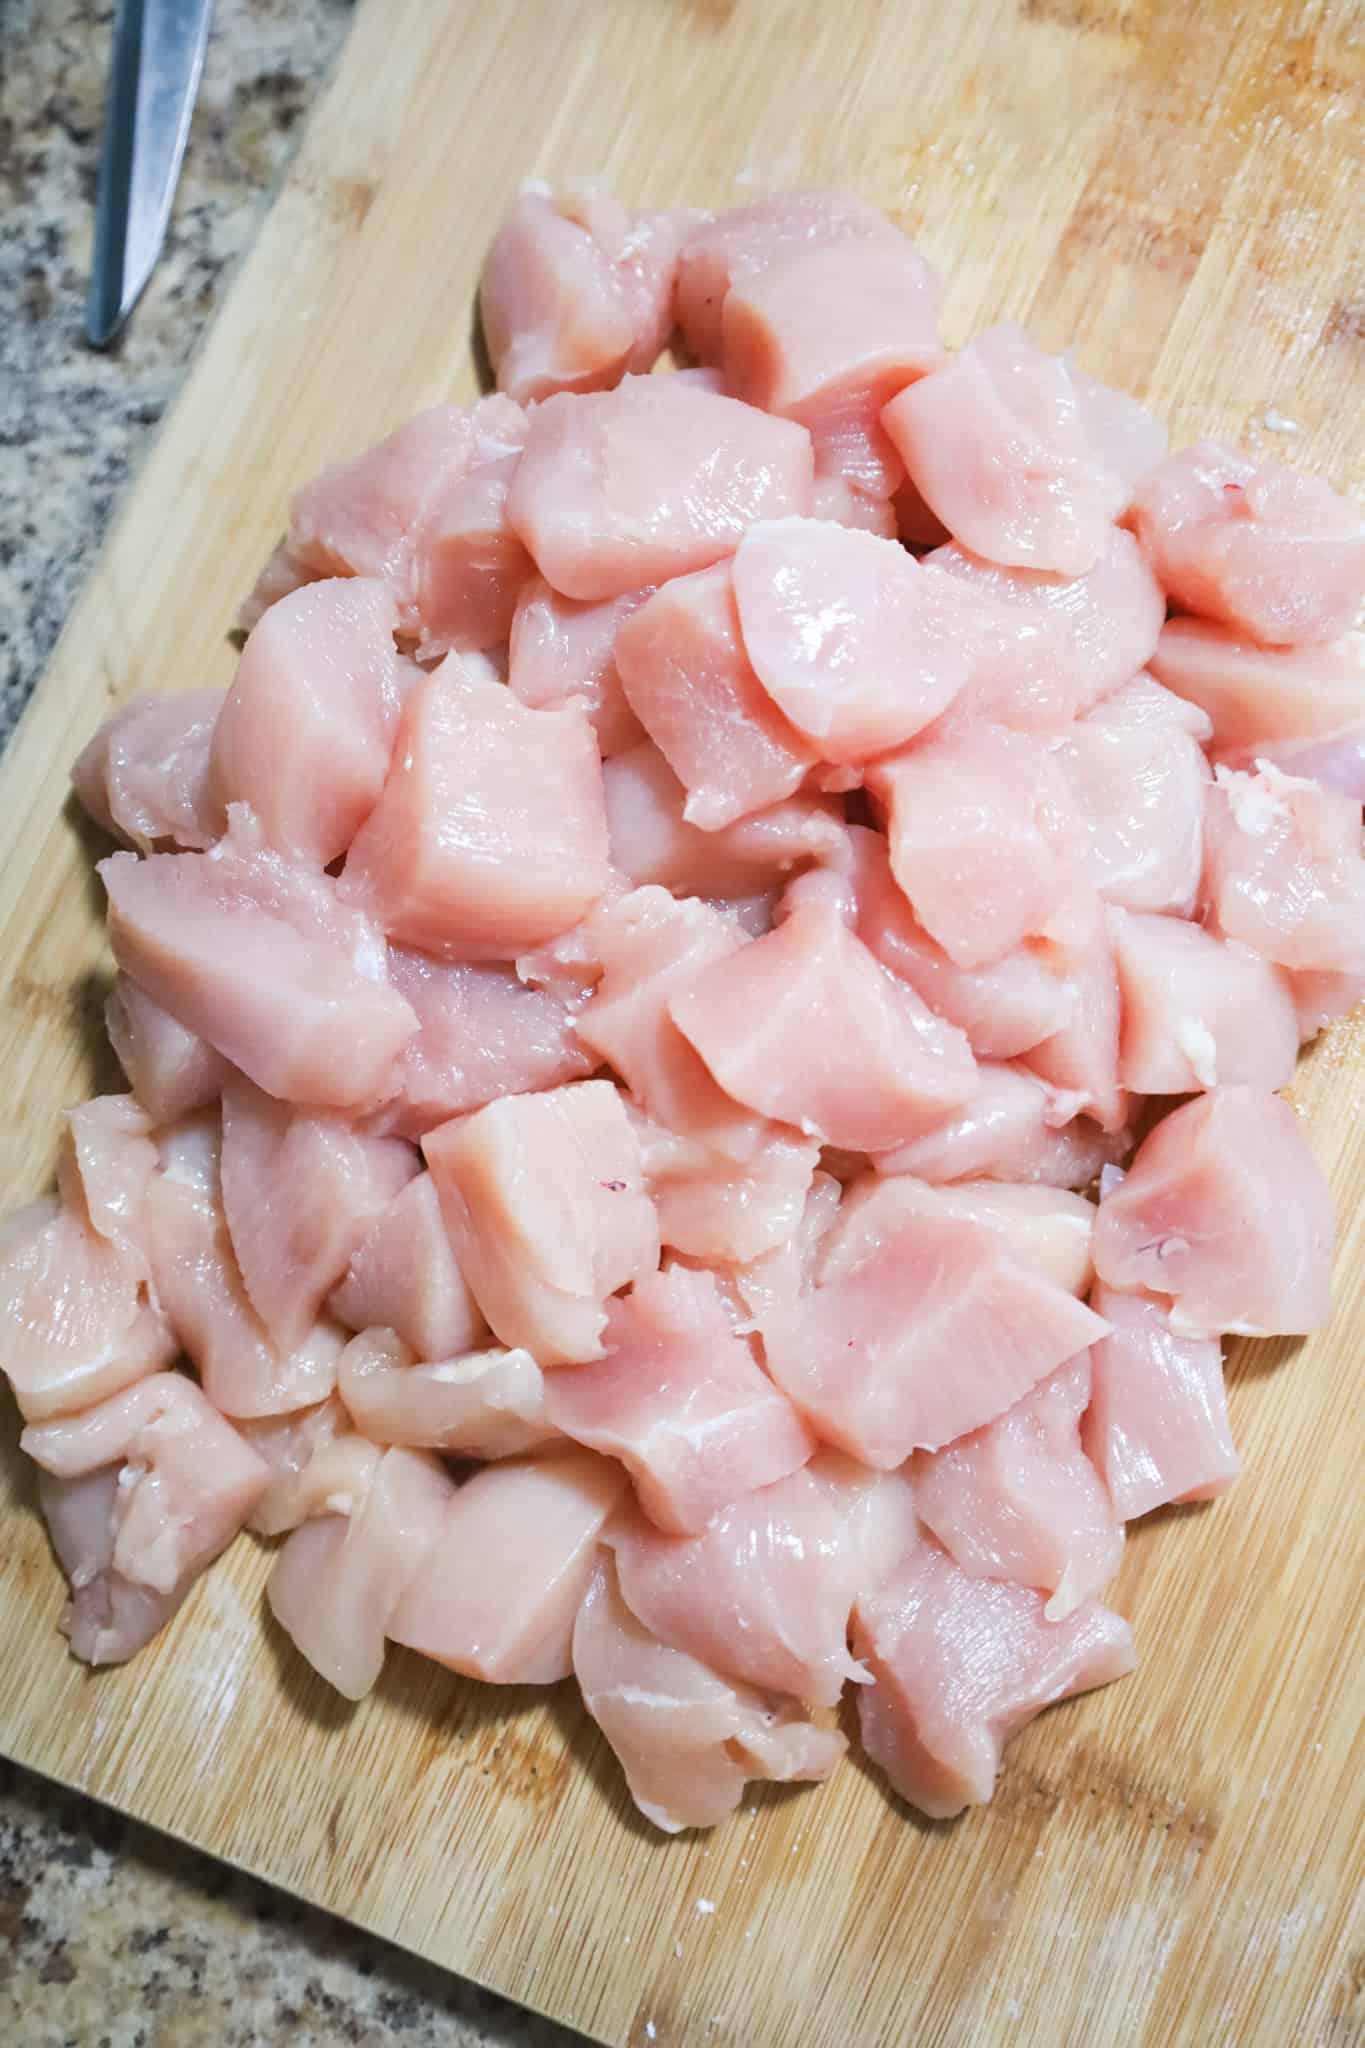 raw chicken breast chunks on a cutting board